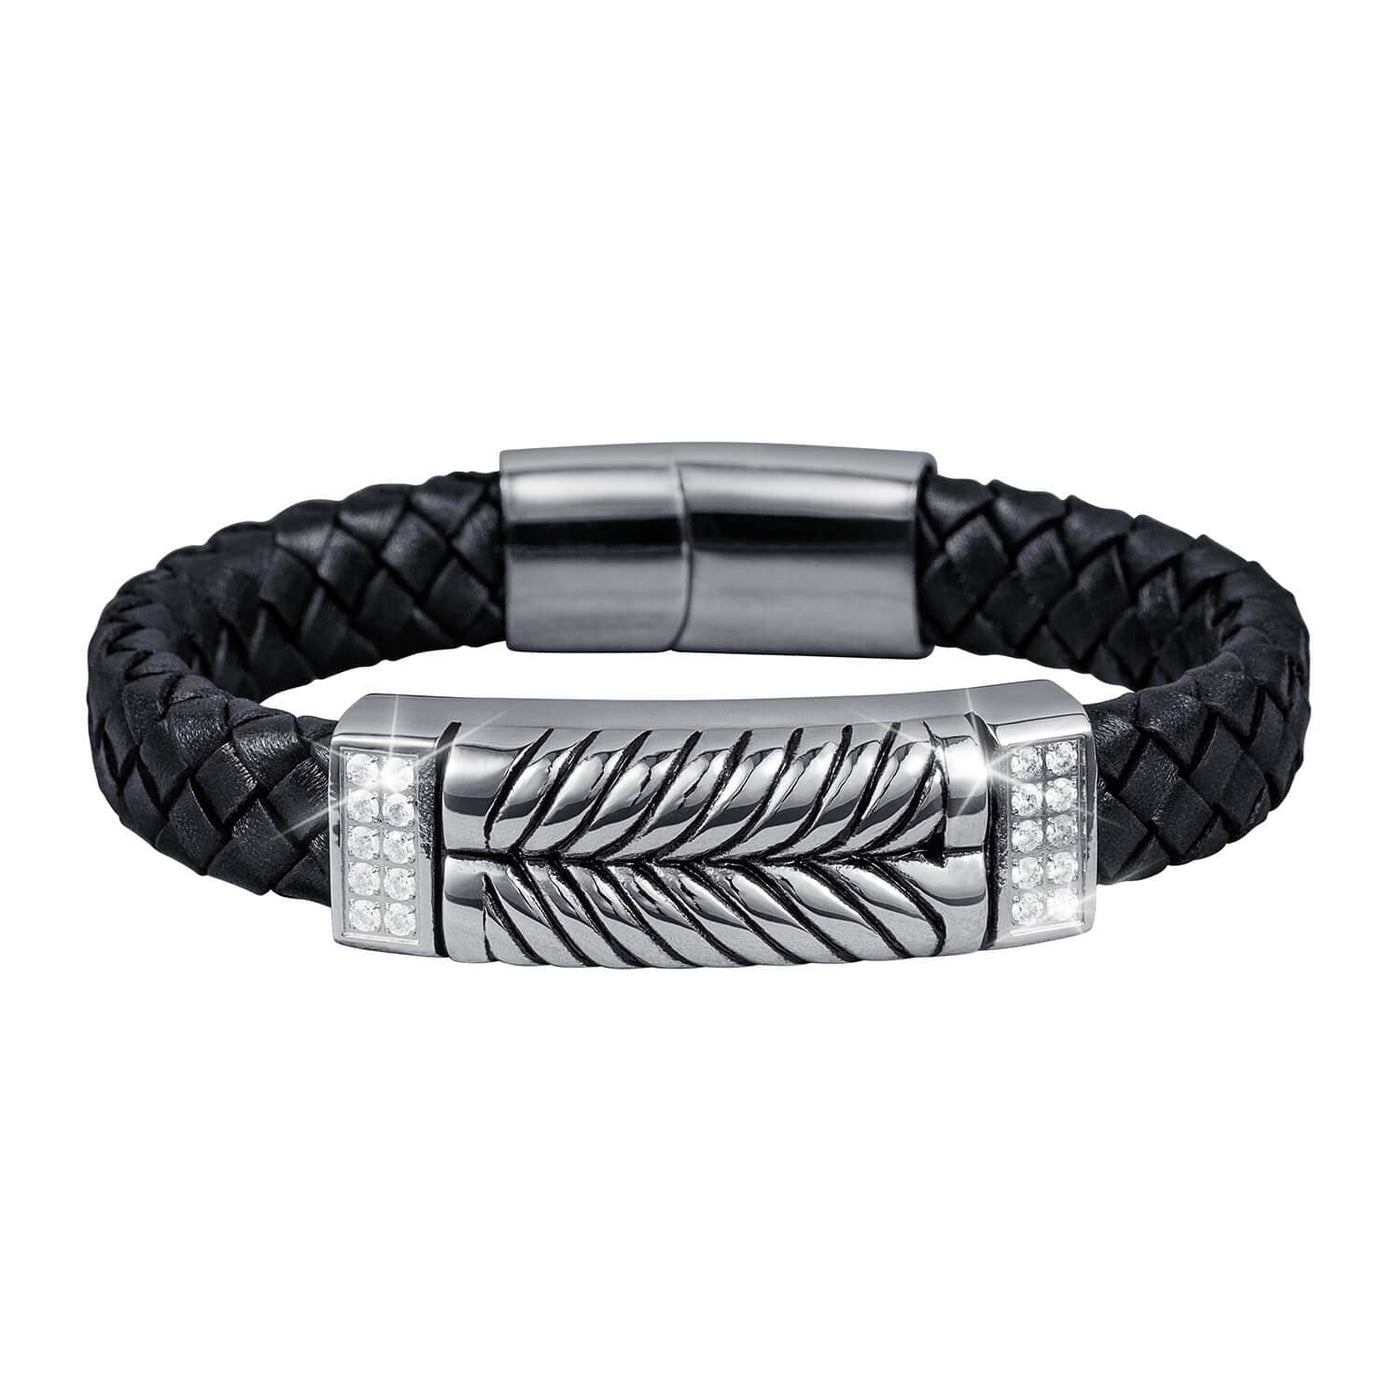 Daniel Steiger Skyline Leather Steel Bracelet